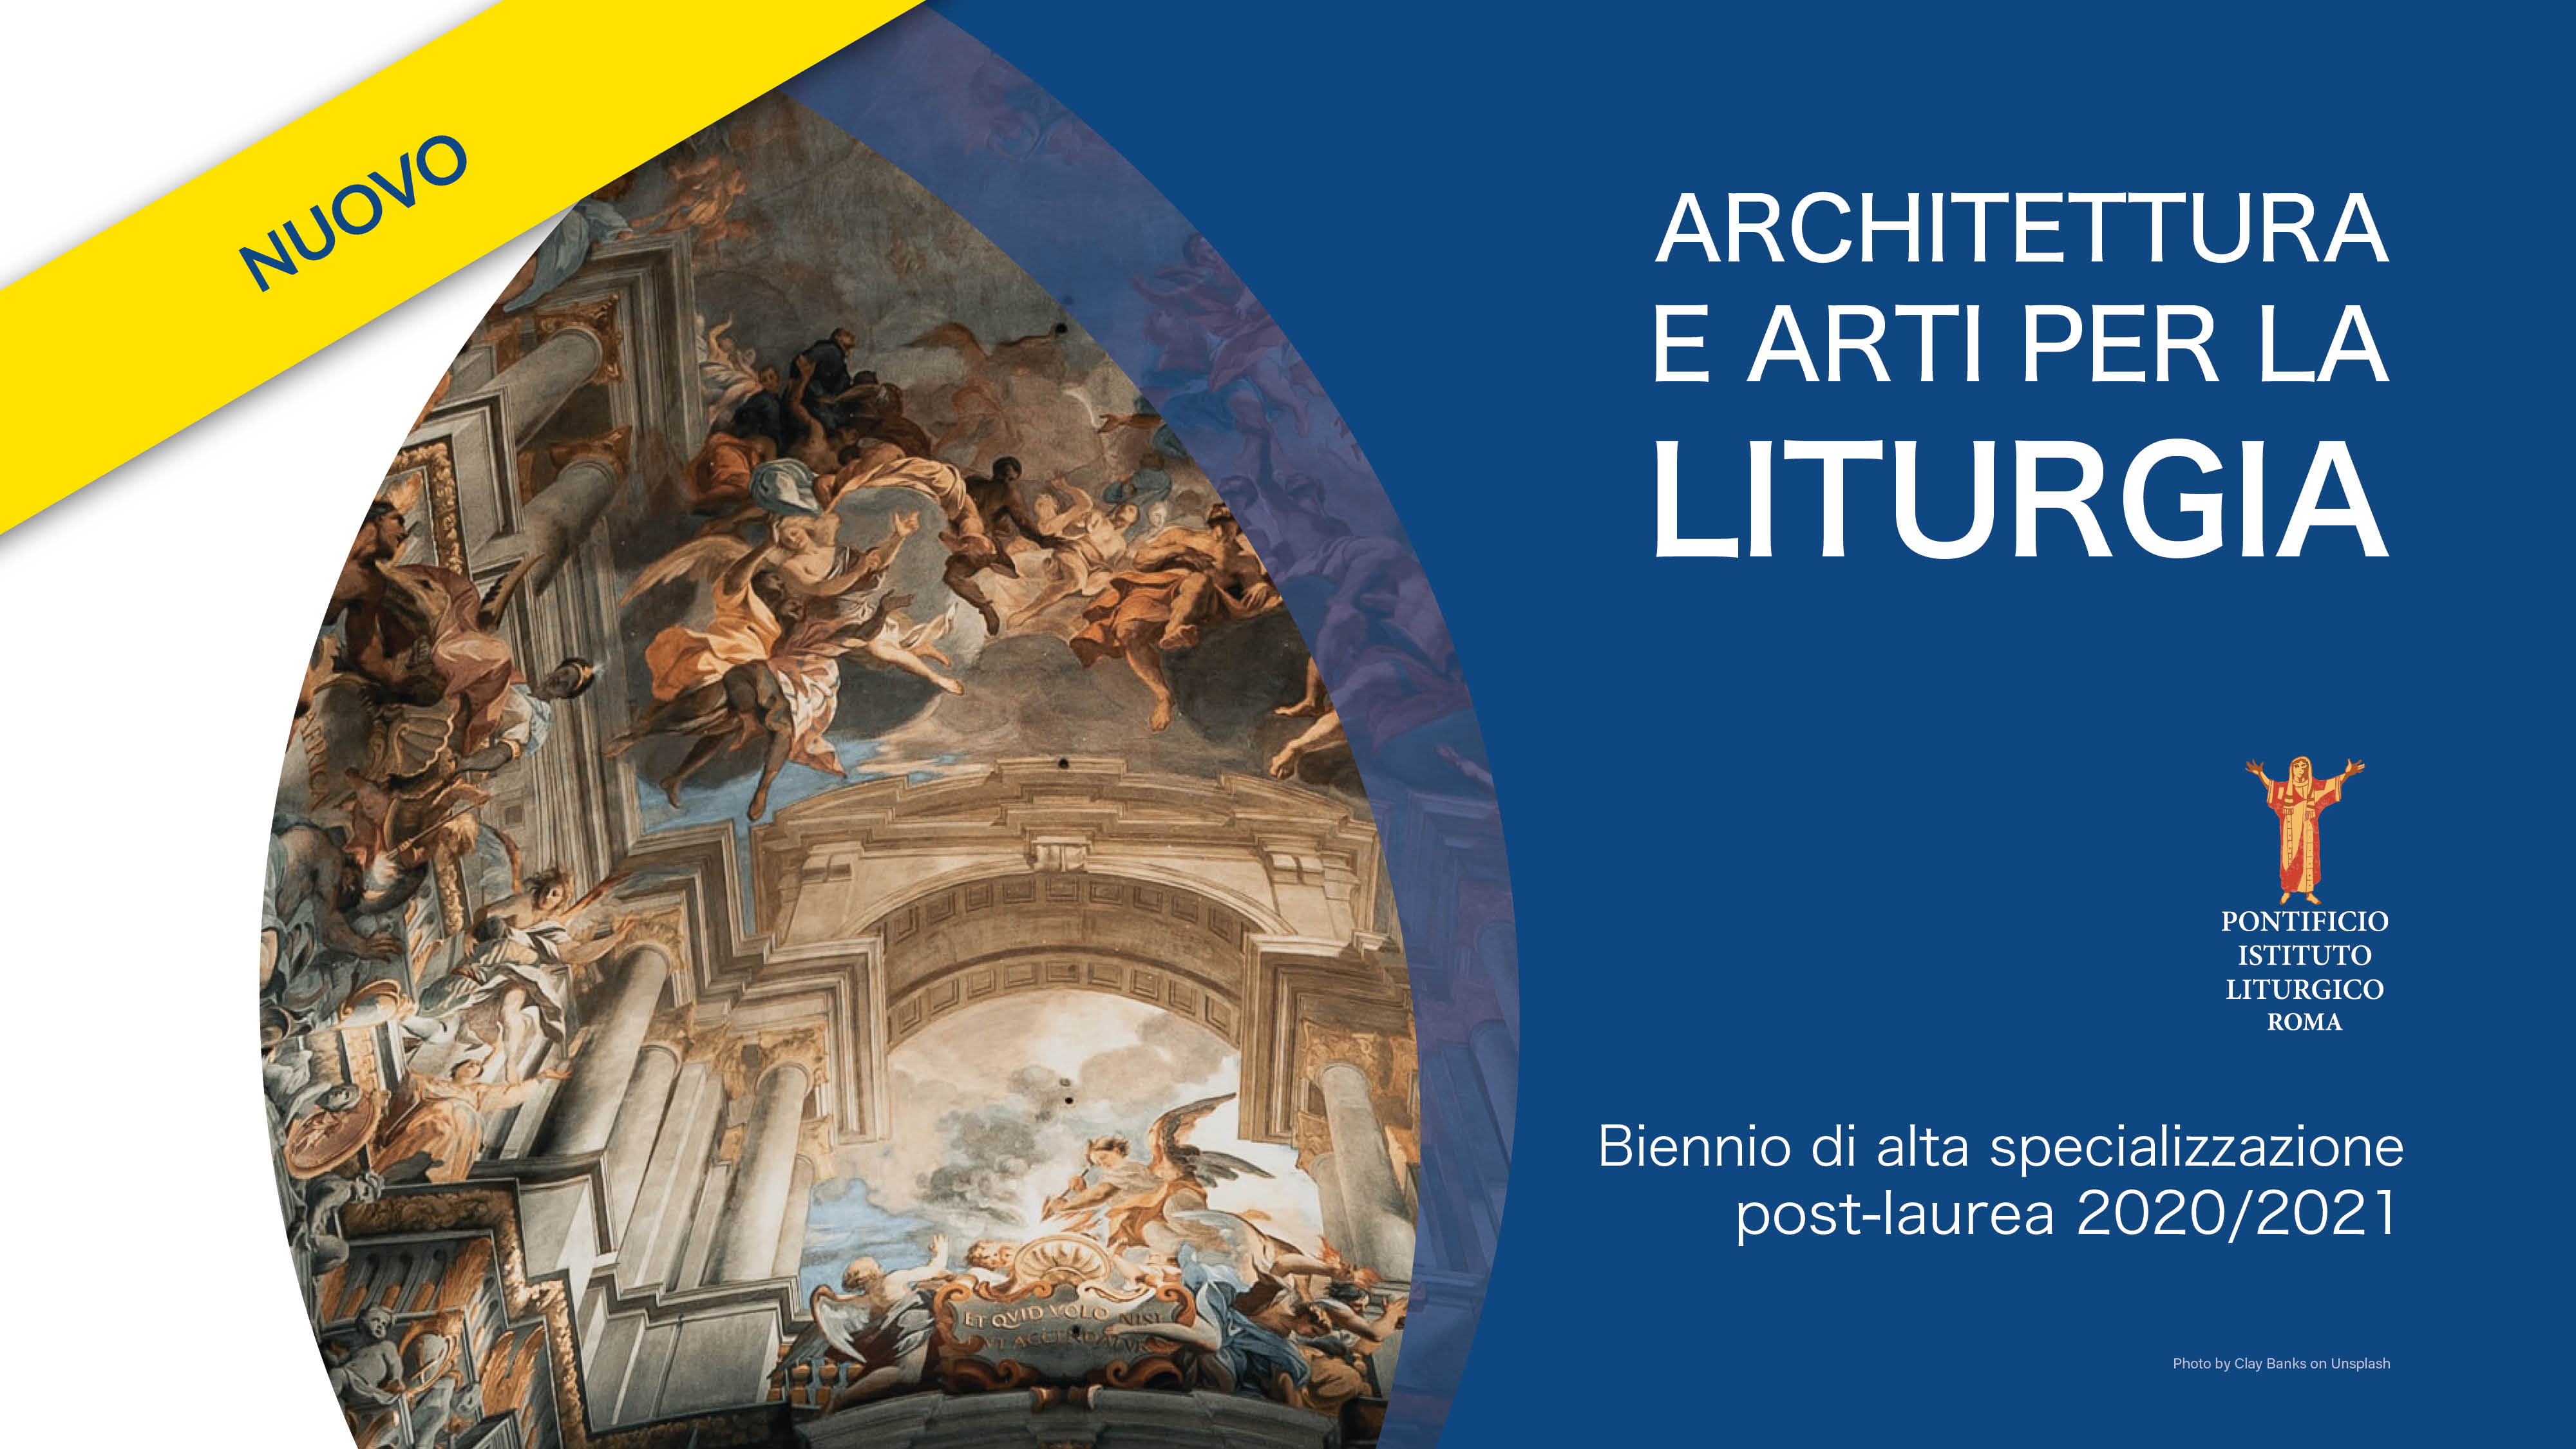 Architettura e arti per la liturgia 2020-21